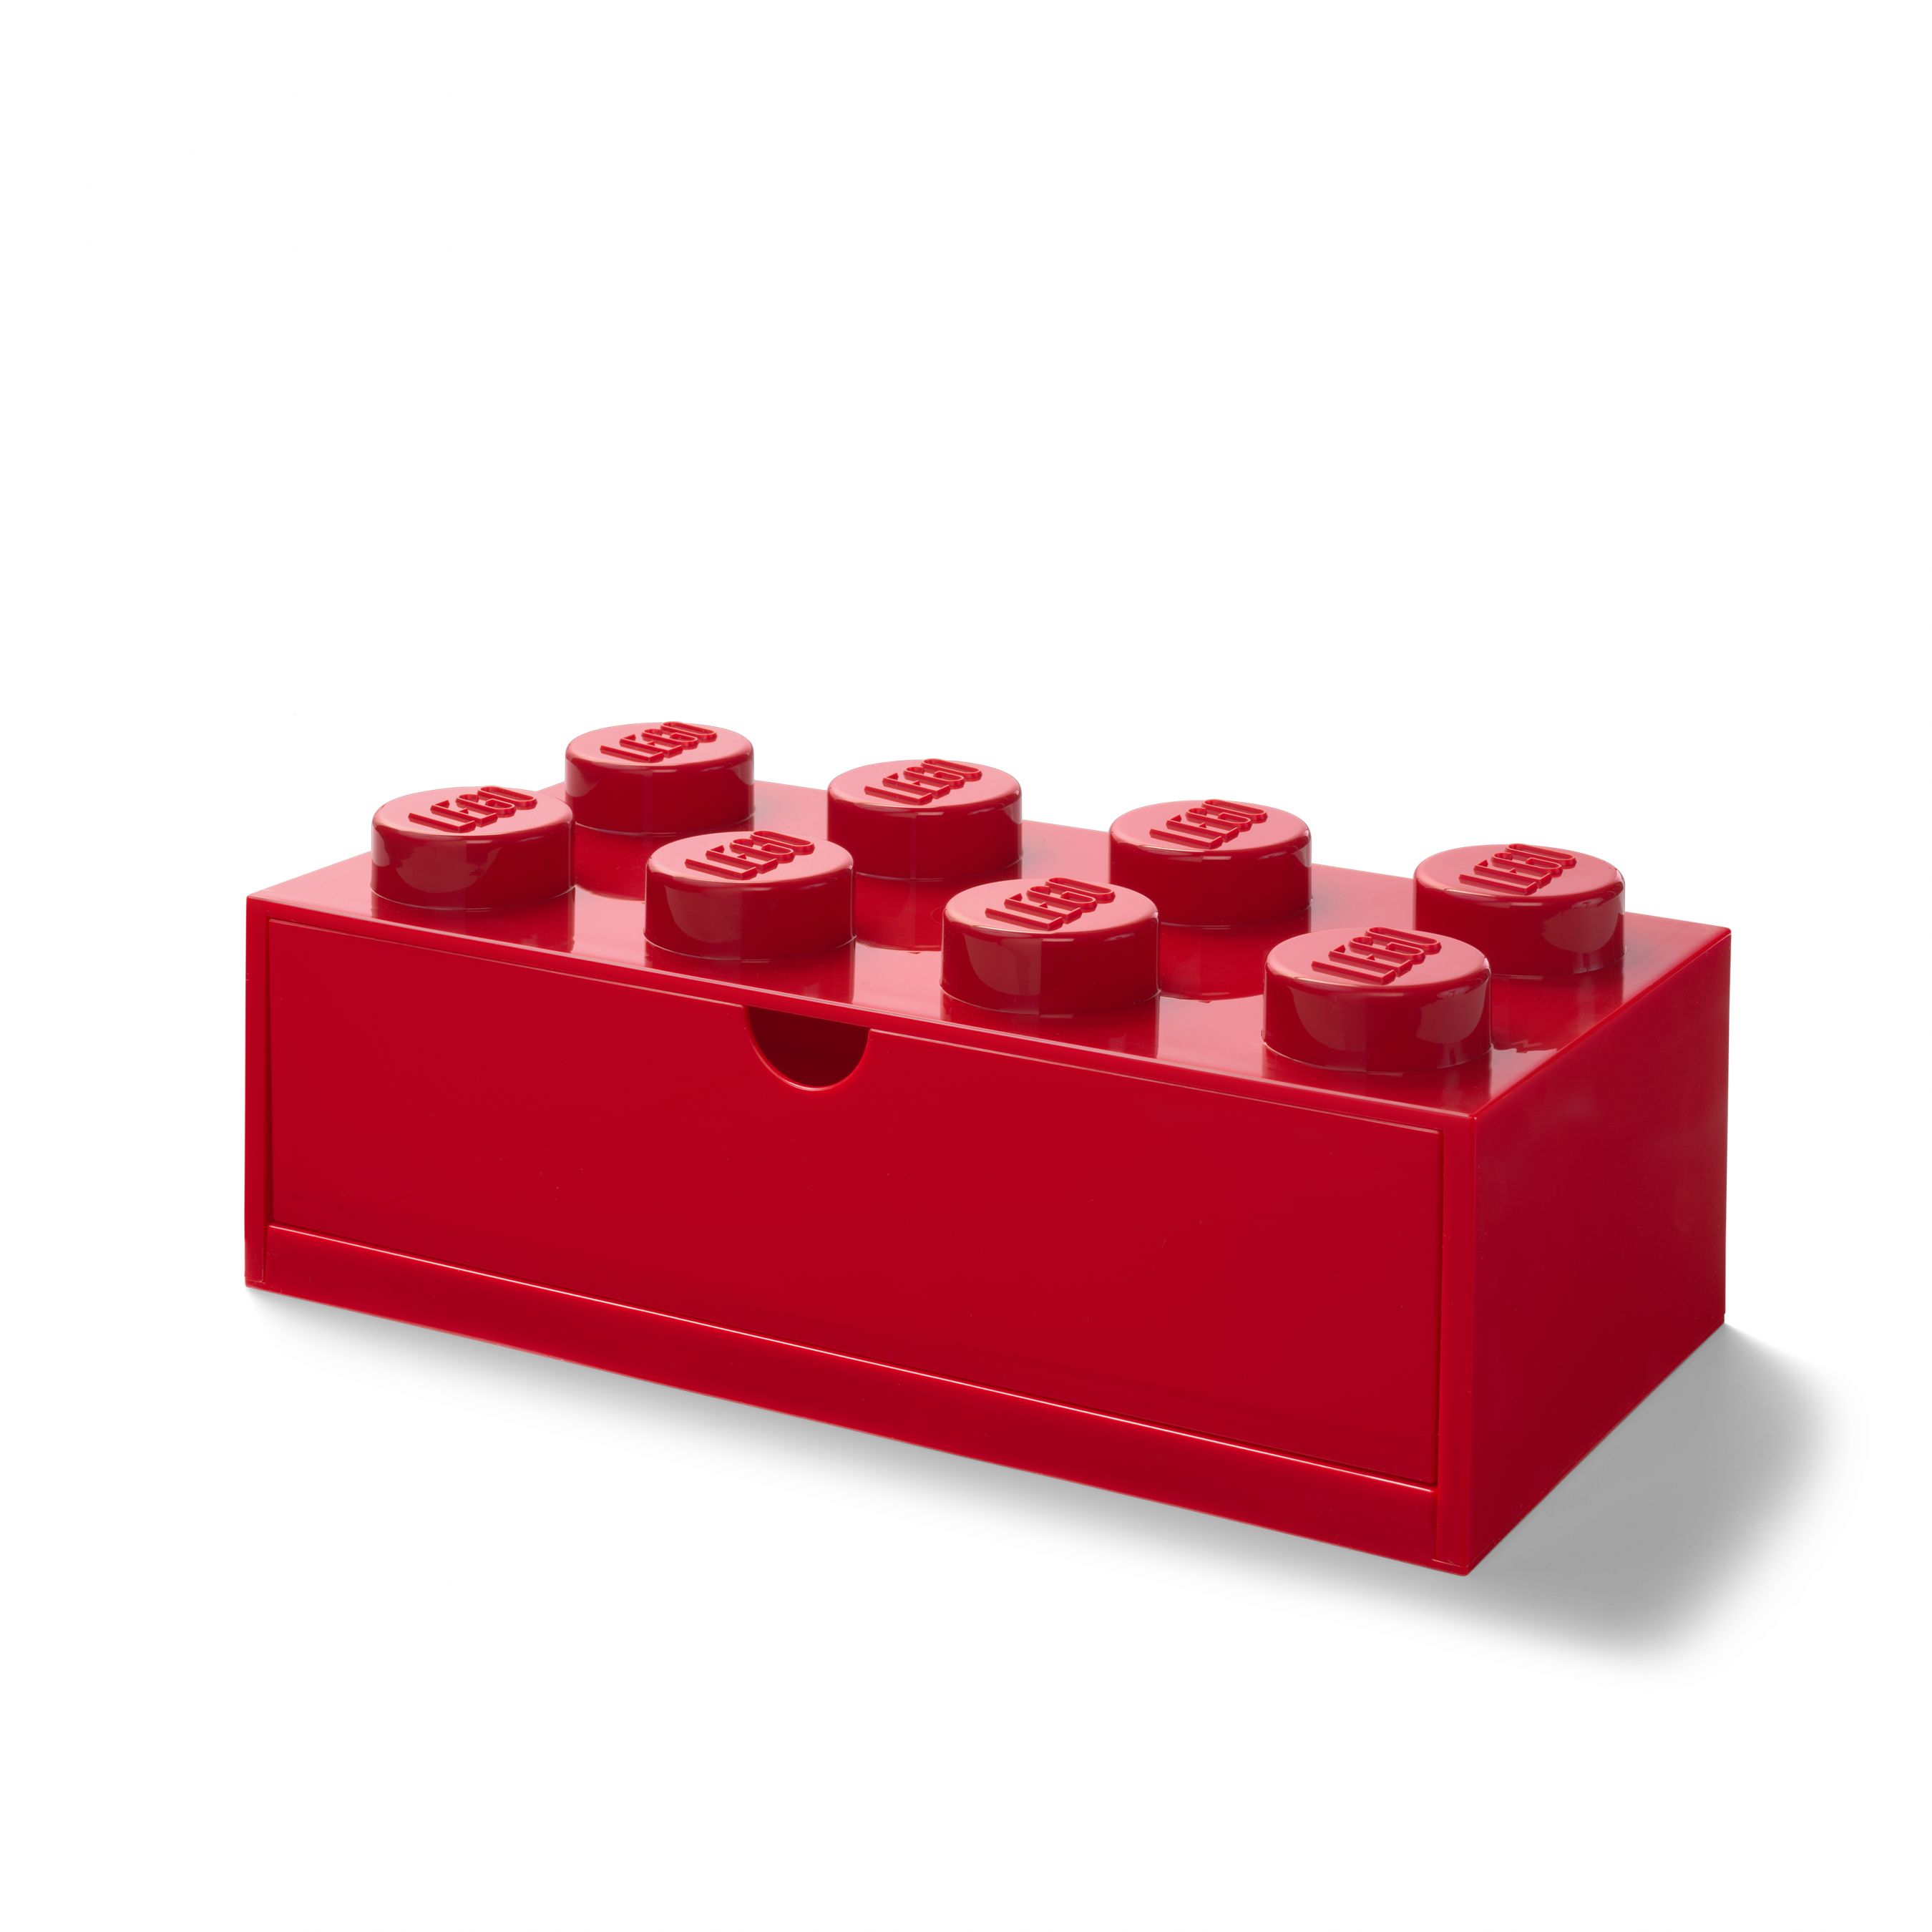 LEGO Gear 5006142 Aufbewahrungsstein mit Schubfach und 8 Noppen in Rot